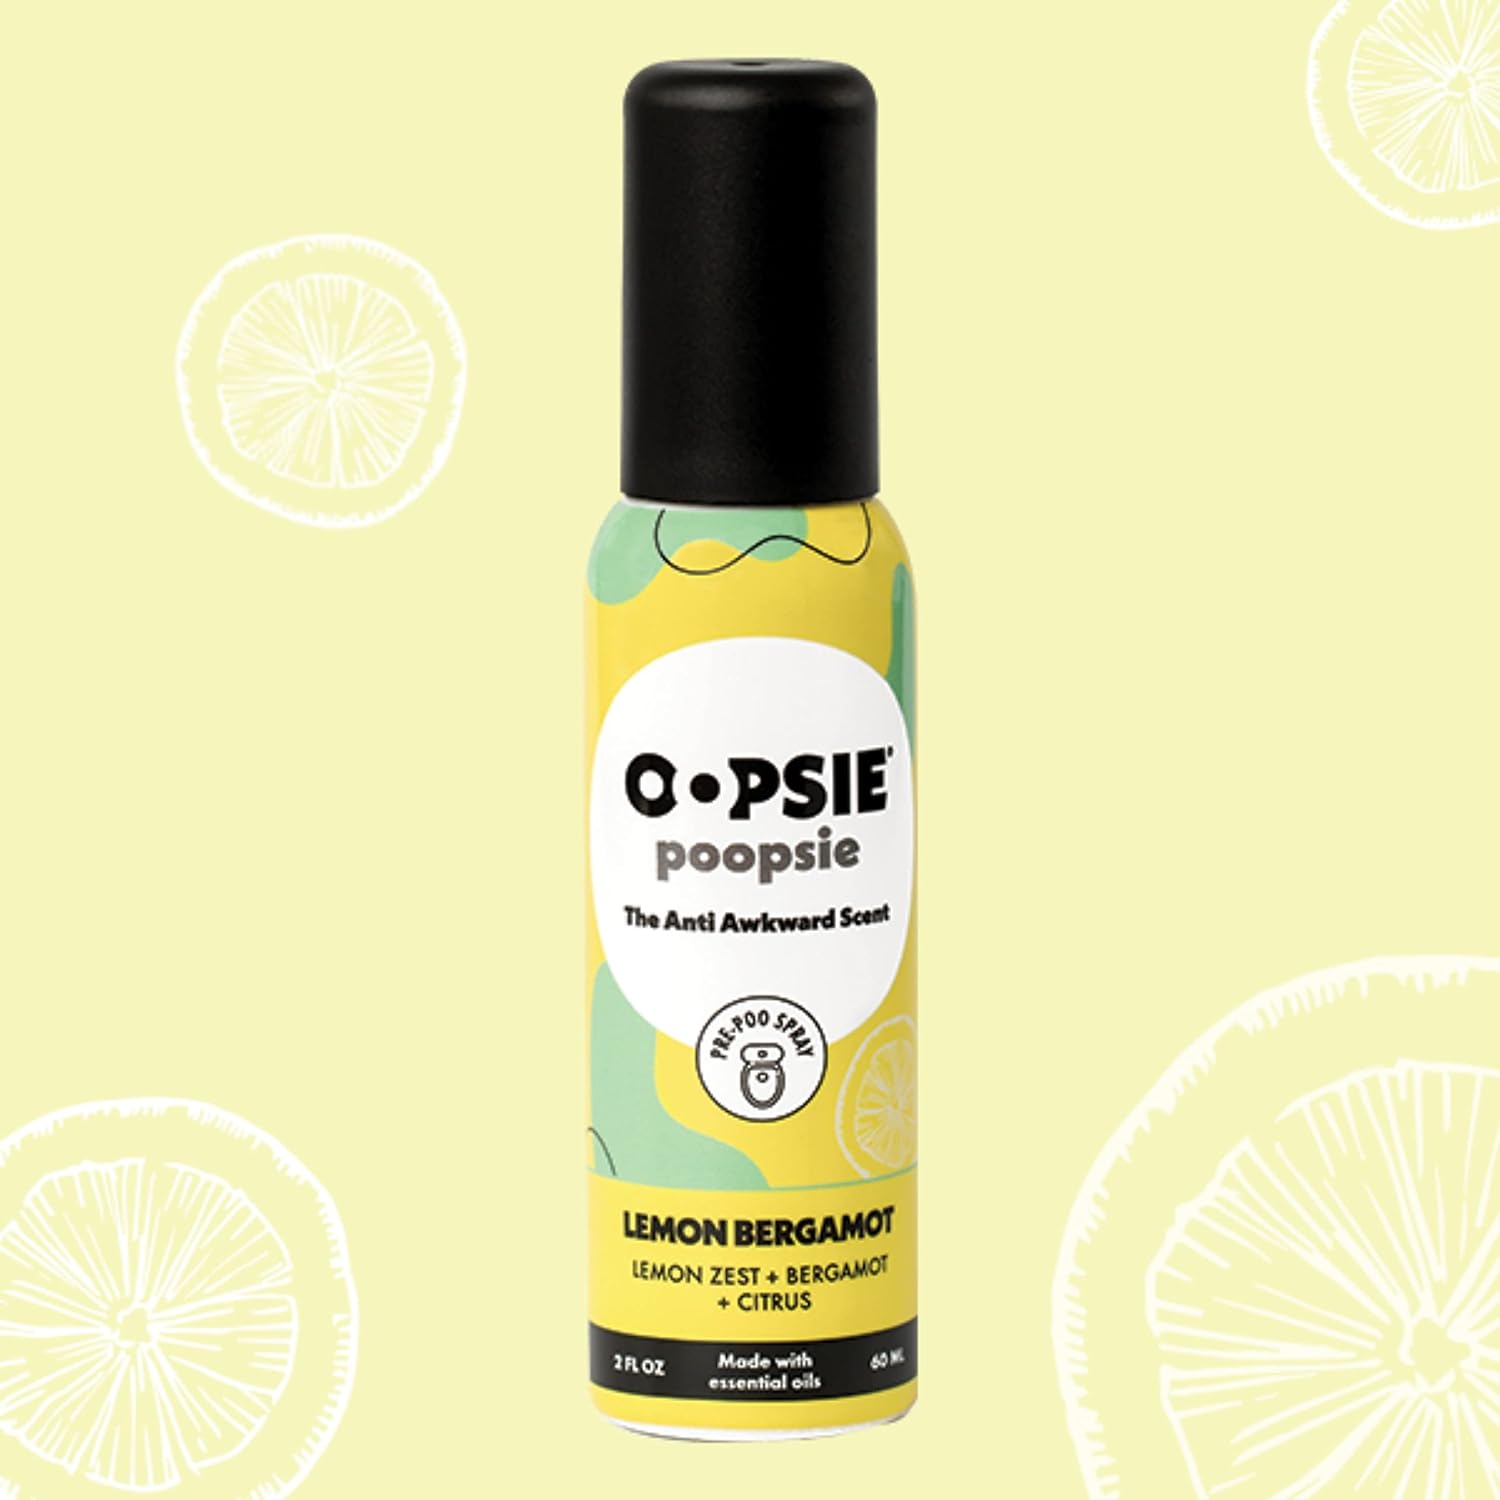 Oopsie Poopsie Pre Poop Spray - 4 Pack Natural Pre Poo Toilet Spray for Bathrooms, Trap Odors & Eliminate Embarrassment, 2oz Travel Size Pre Poo Air Freshener Spray (Lemon Bergamot) : Health & Household